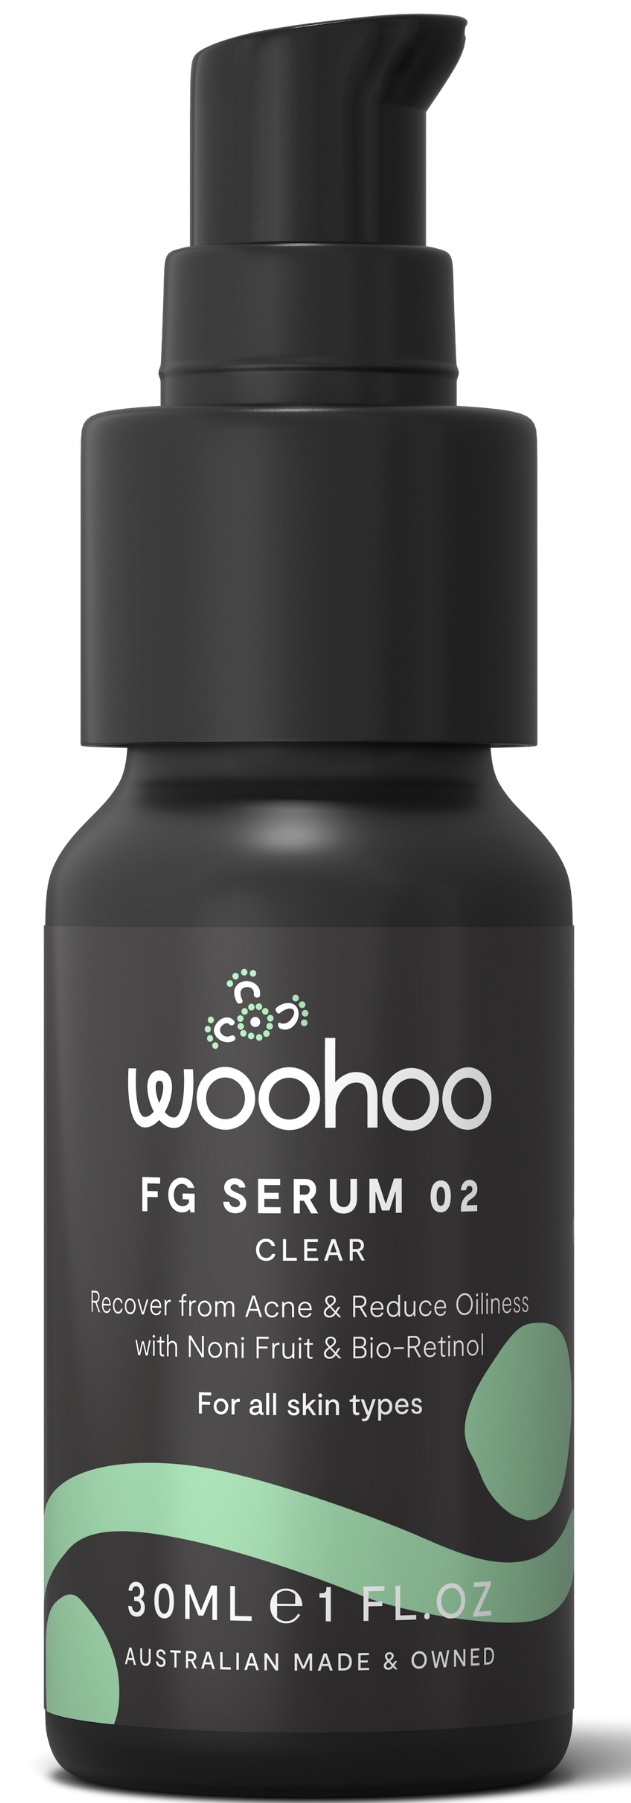 Woohoo FG Serum 02 - Clear